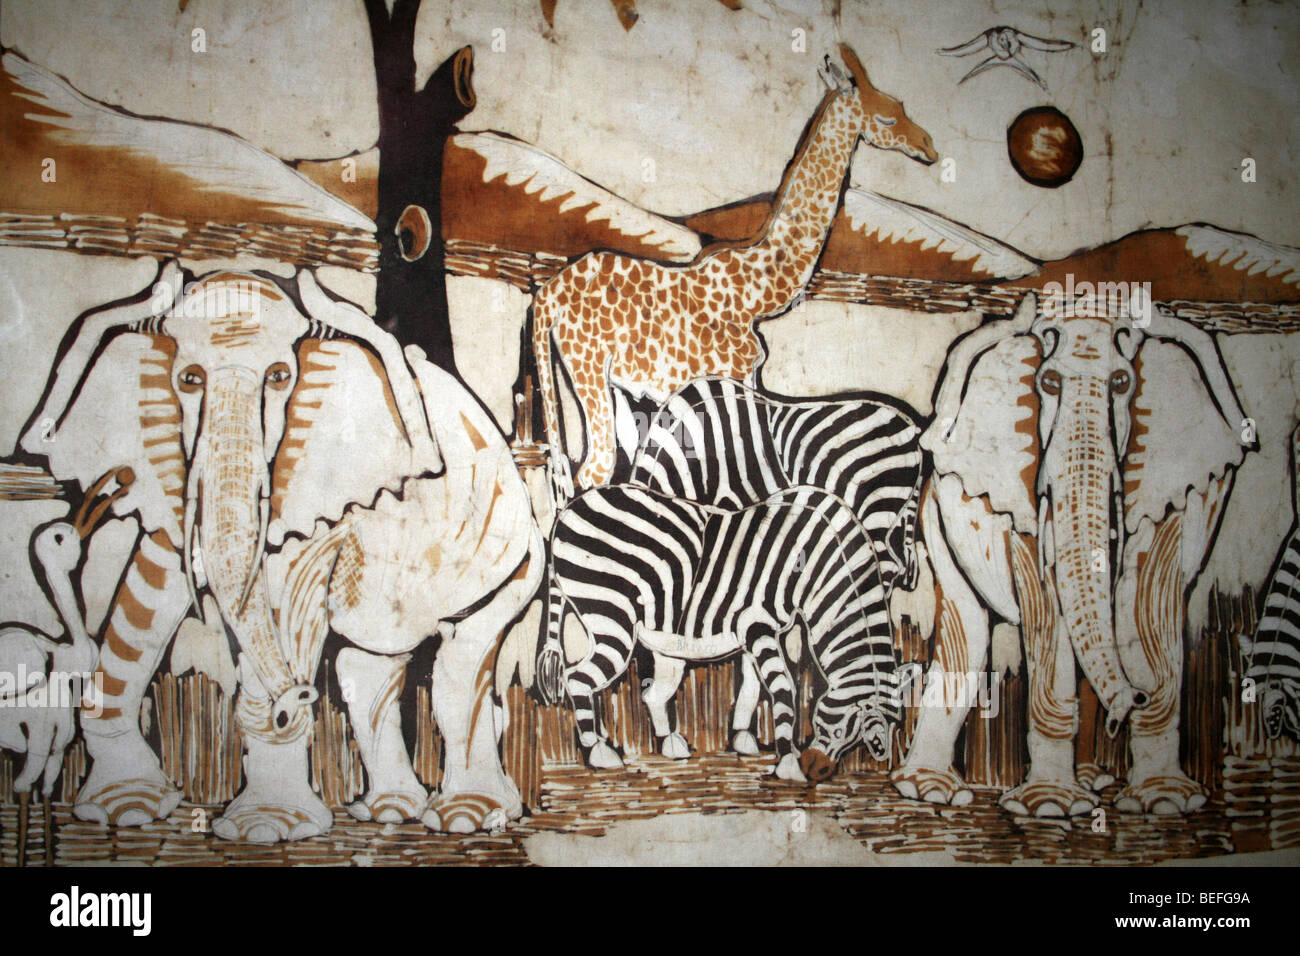 Afrikanische Tierwelt inspiriert Batik zeigt Elefanten, Zebras und Giraffen Stockfoto